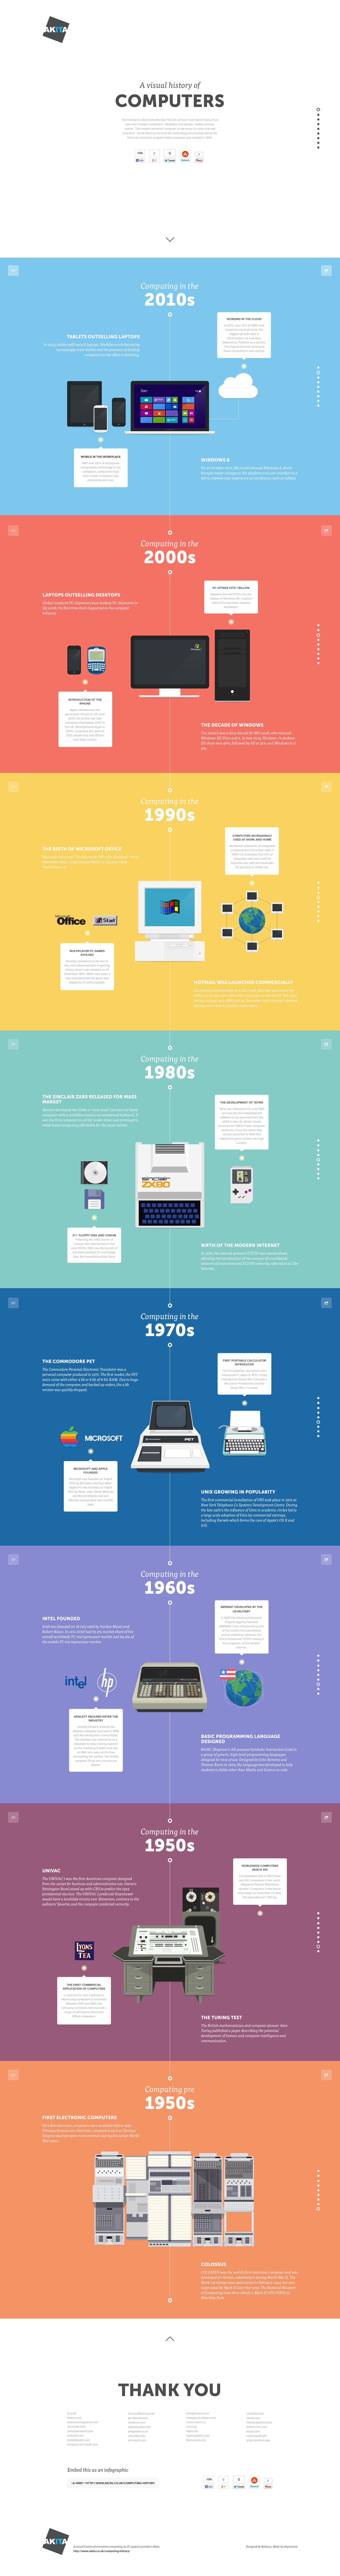 A Visual History of Computing